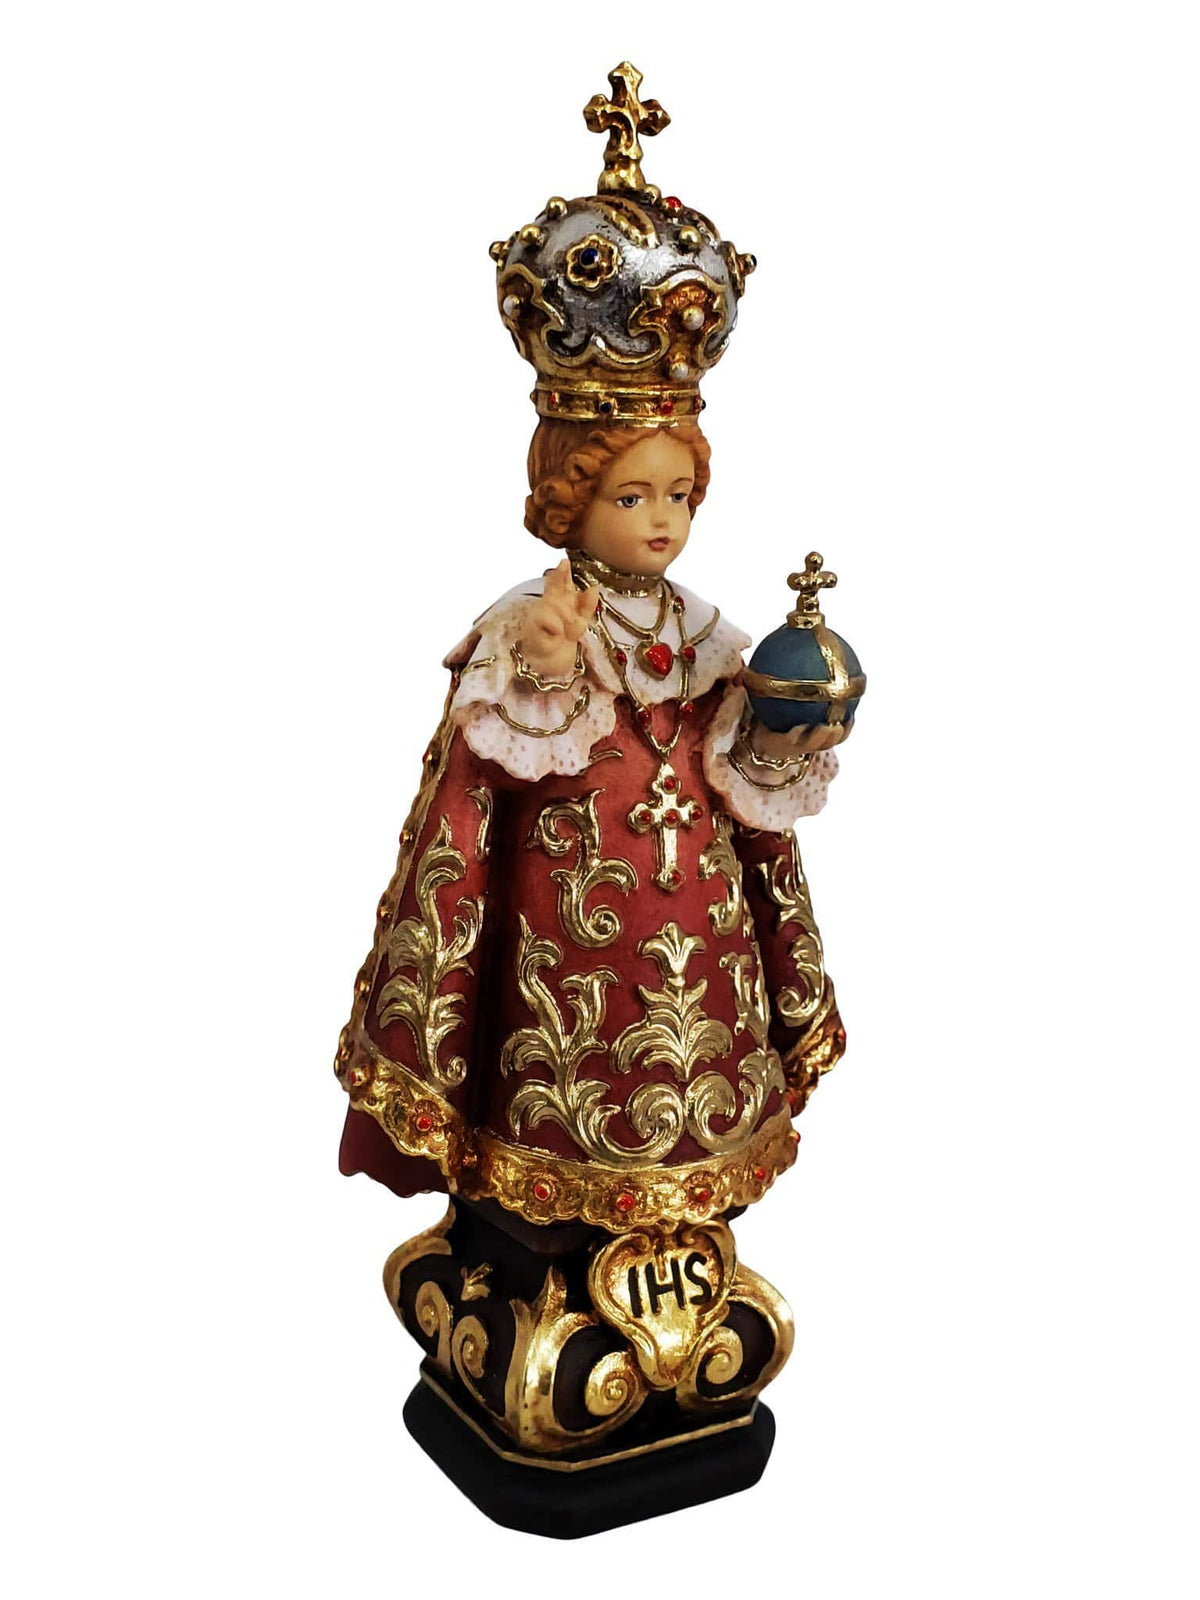 Imagem do Menino Jesus de Praga em Madeira Italiana 15 cm